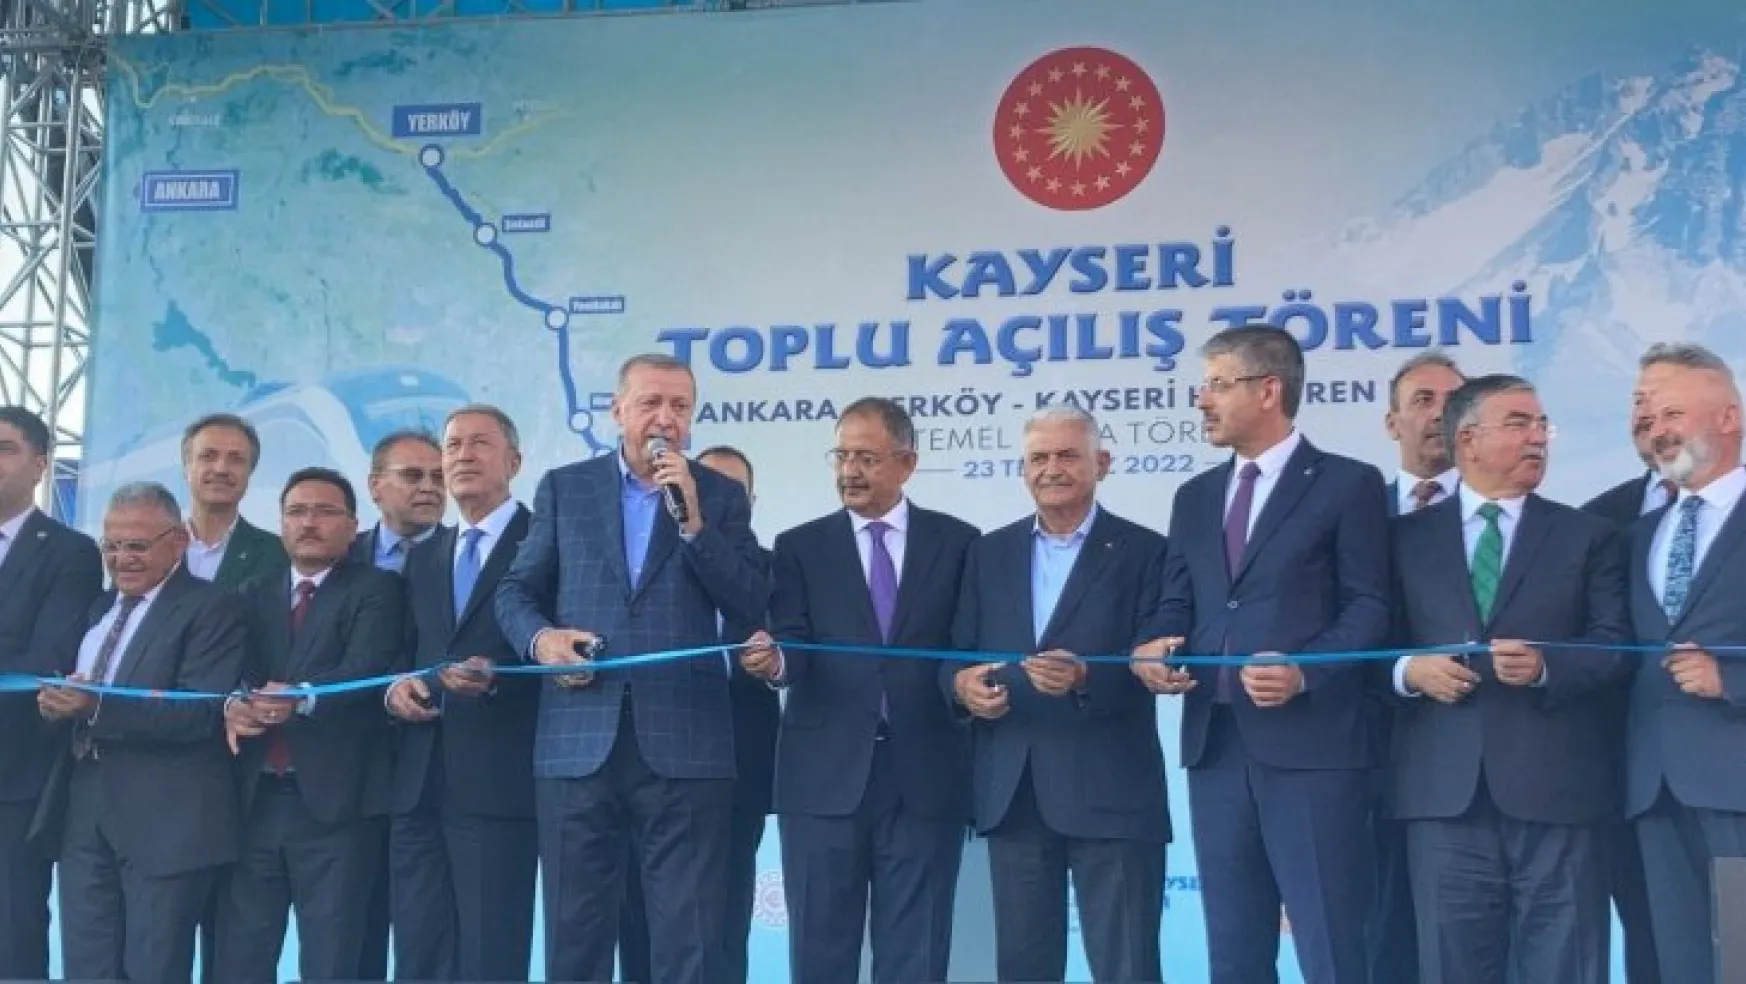 Cumhurbaşkanı Erdoğan Kayseri'de toplu açılış töreni gerçekleştirdi